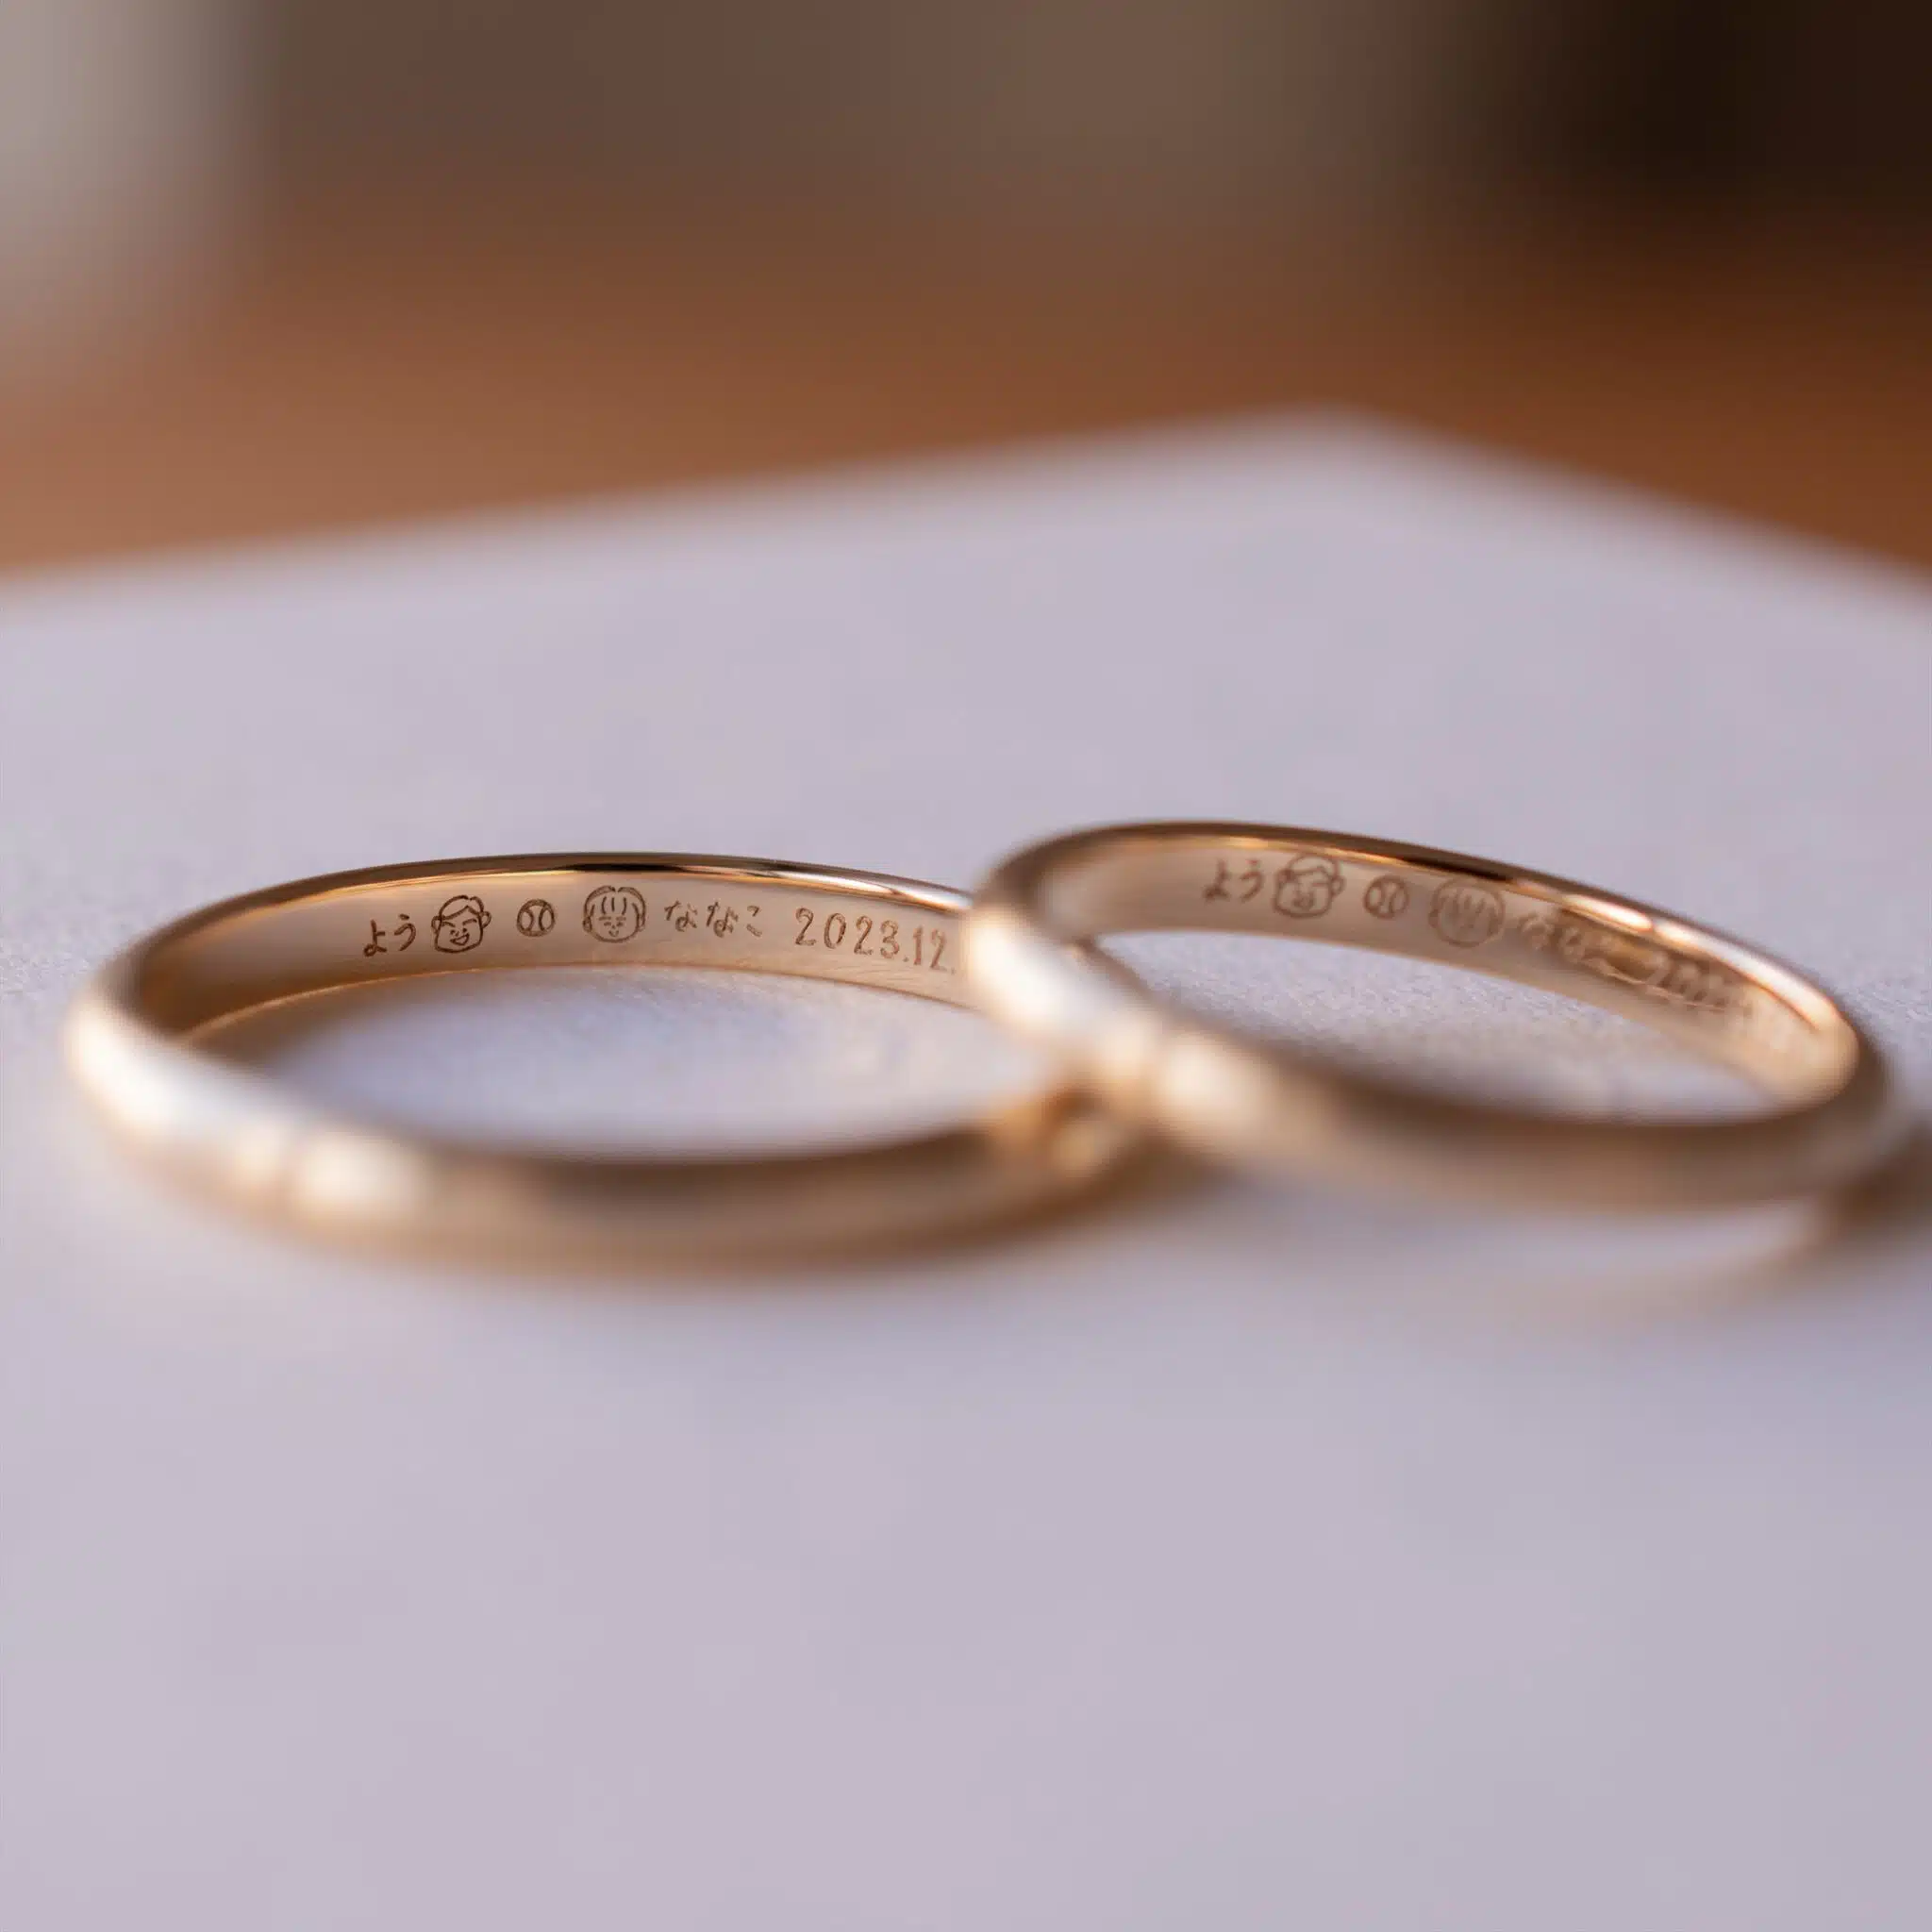 イエローゴールドの結婚指輪,手描きイラストを刻印